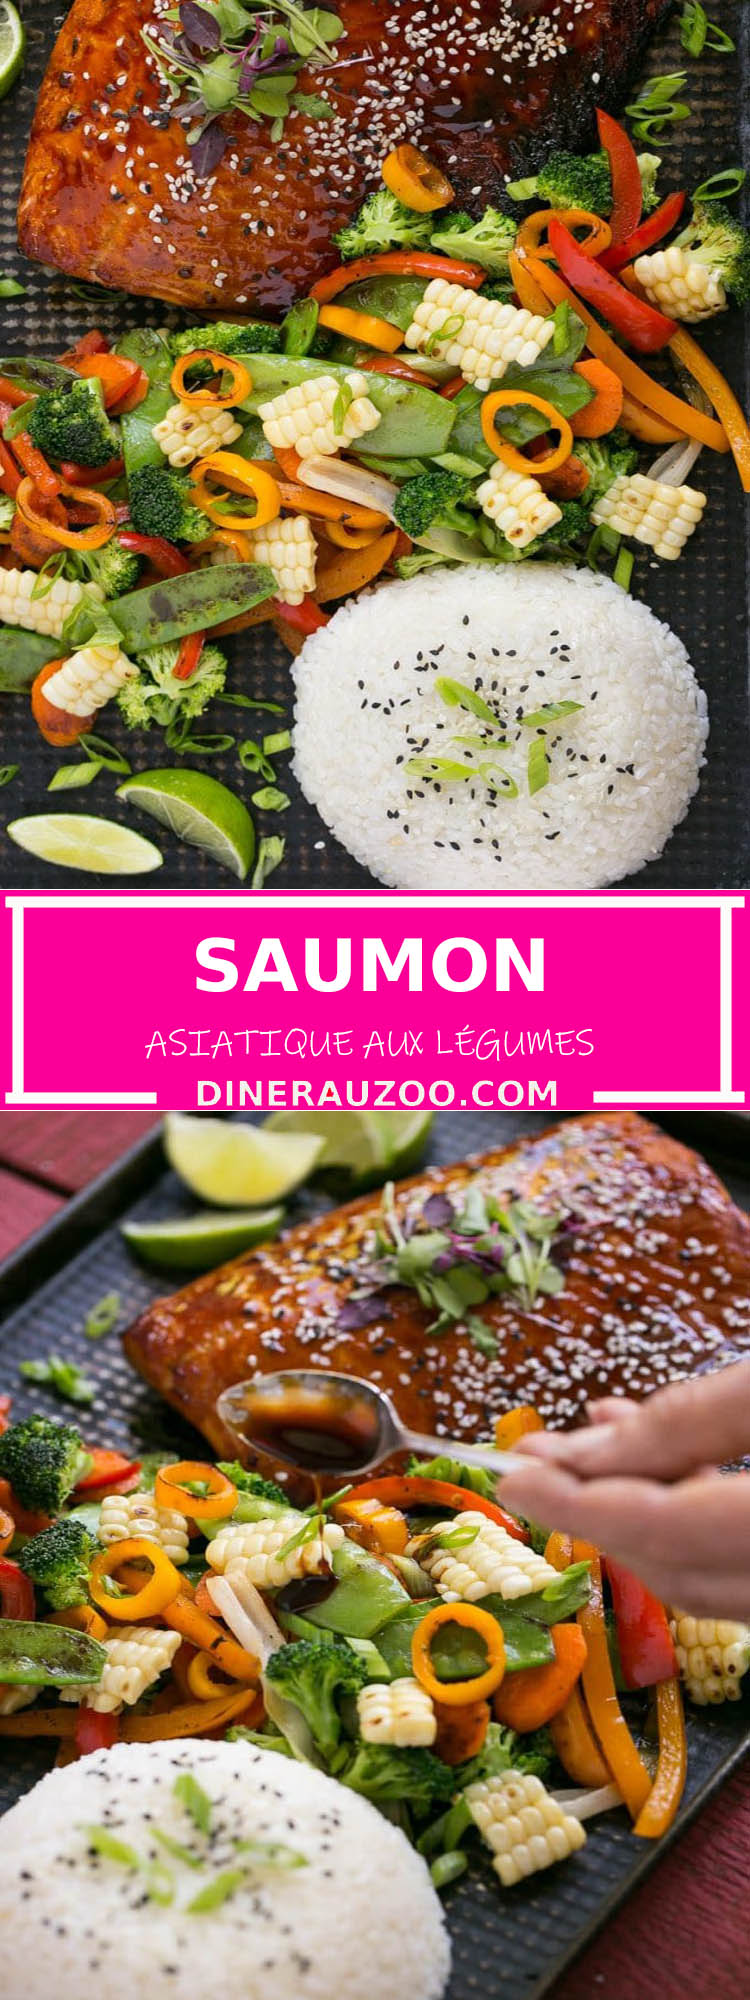 Saumon Asiatique aux Legumes1